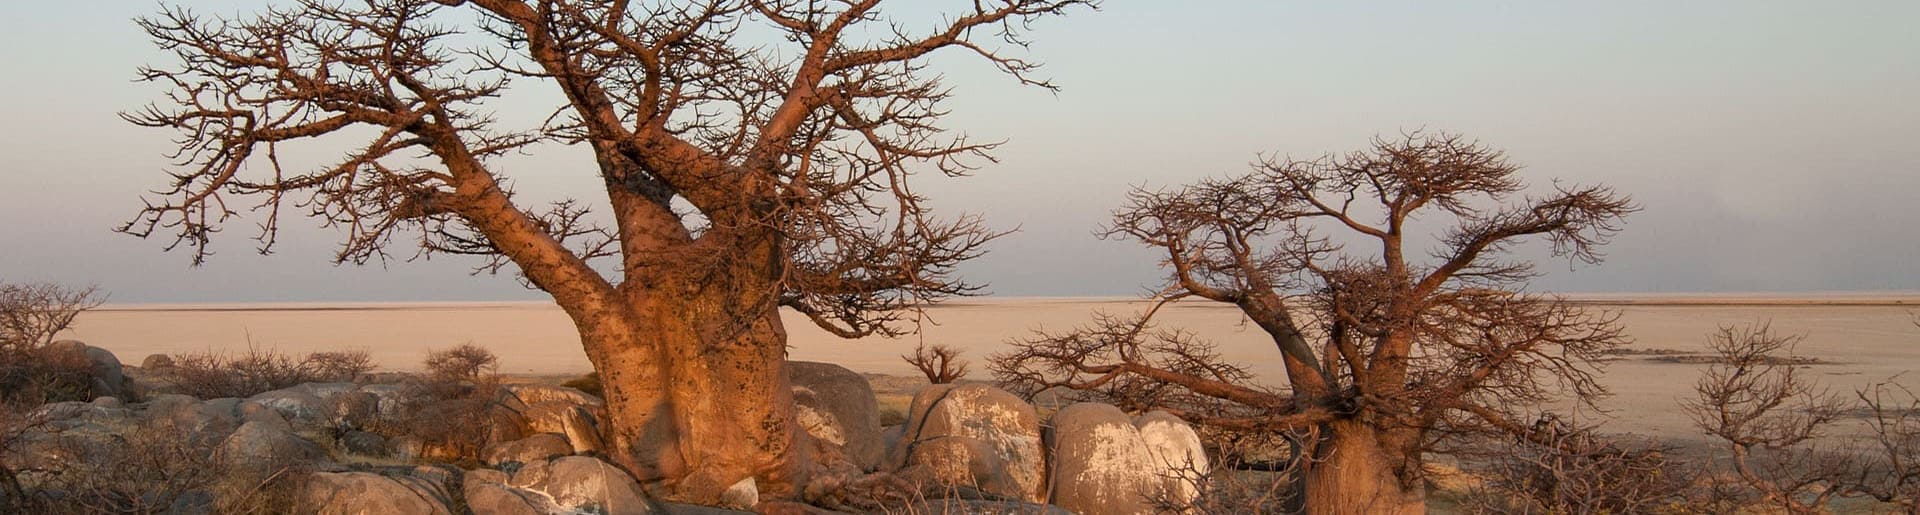 Bannerbild zur Kleingruppenreise Okavango Delta & Baobabs Baobabbäume